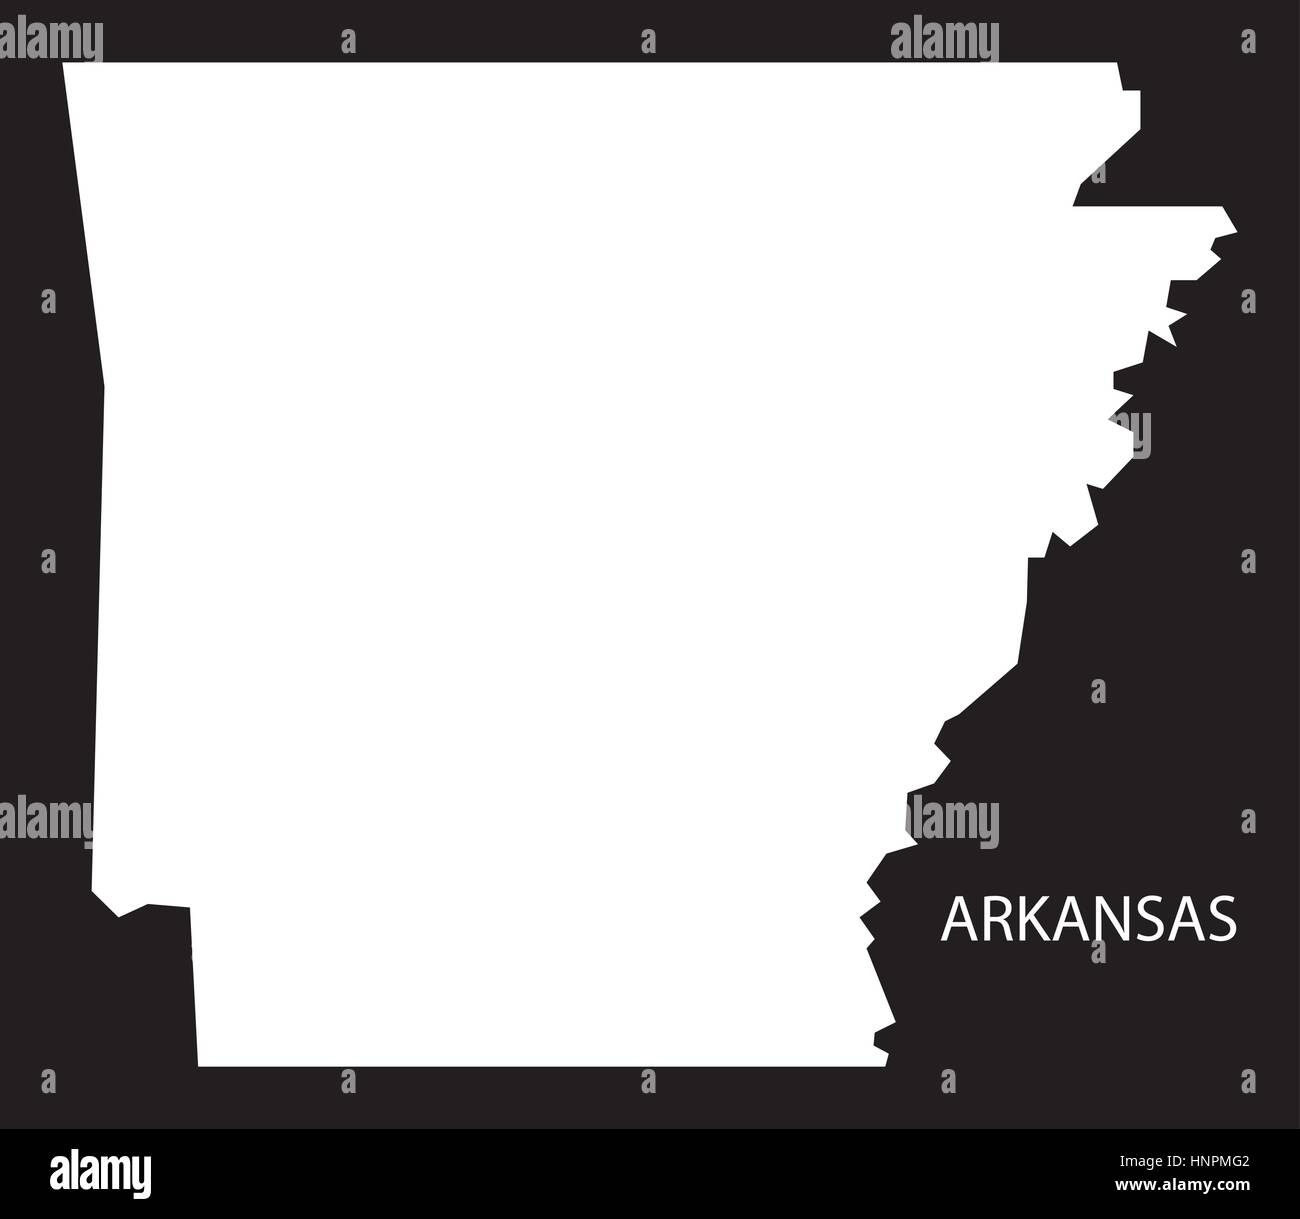 Arkansas-USA-Karte schwarz invertiert silhouette Stock Vektor